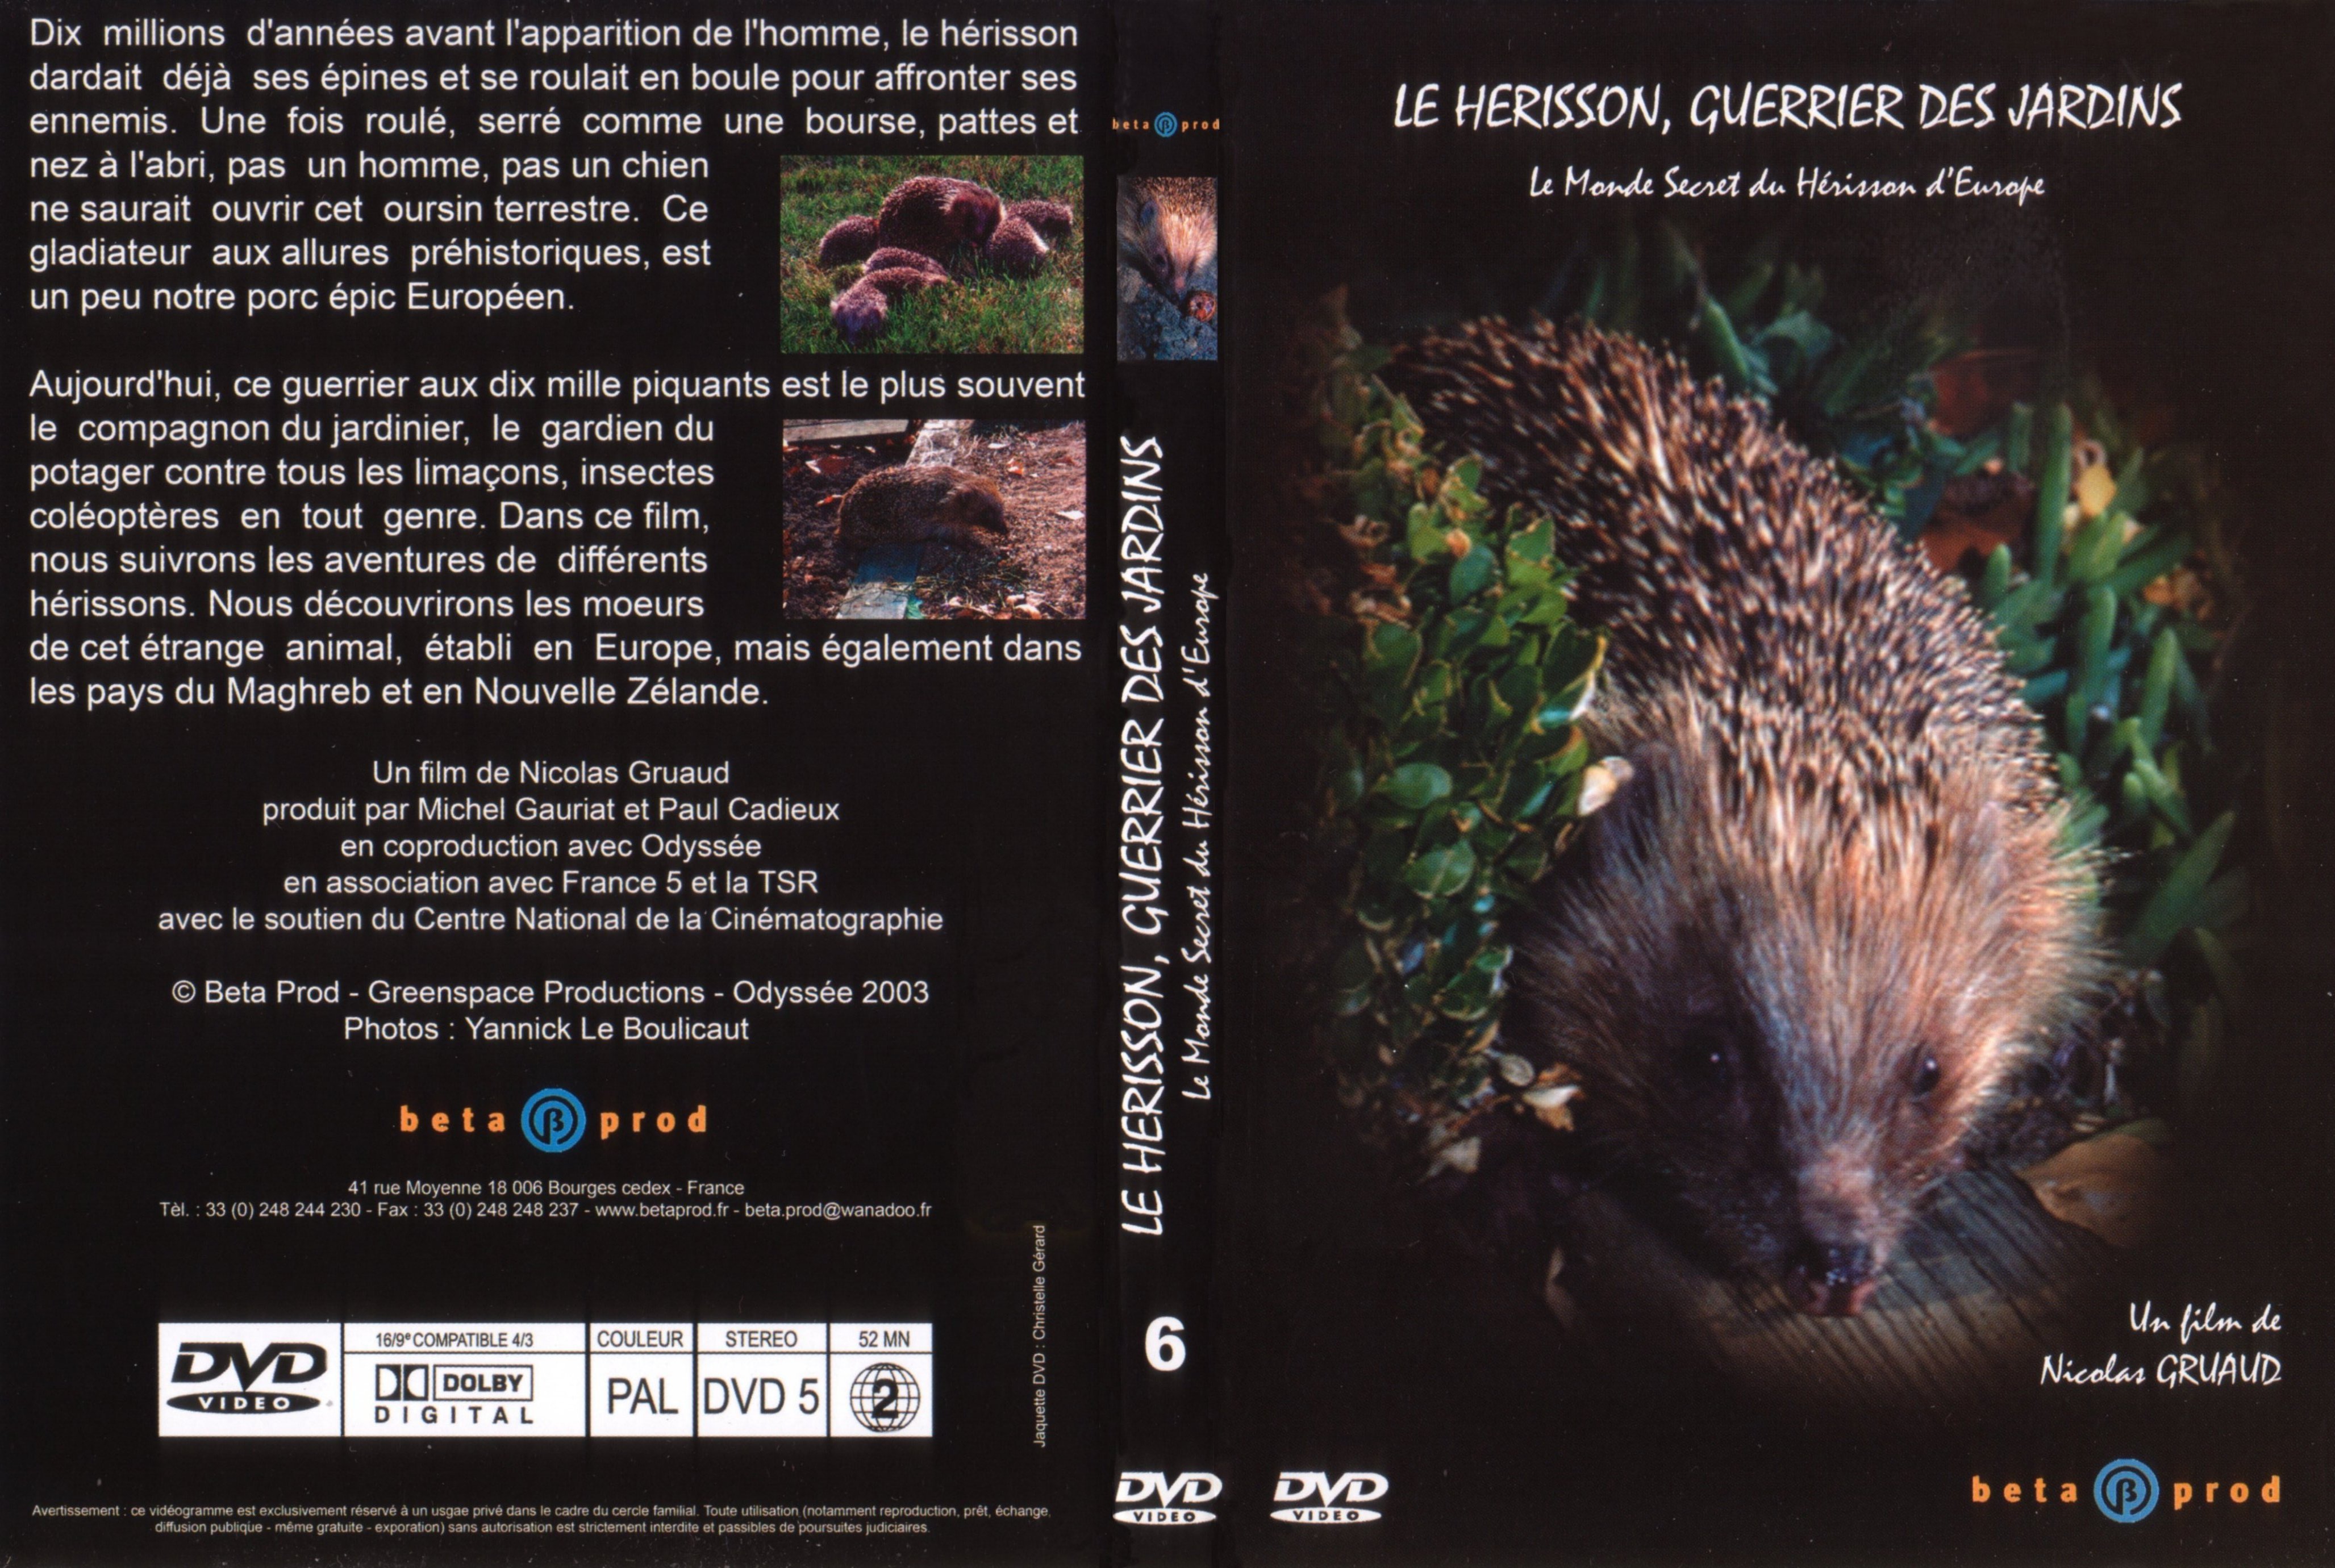 Jaquette DVD Le herisson guerrier des jardins